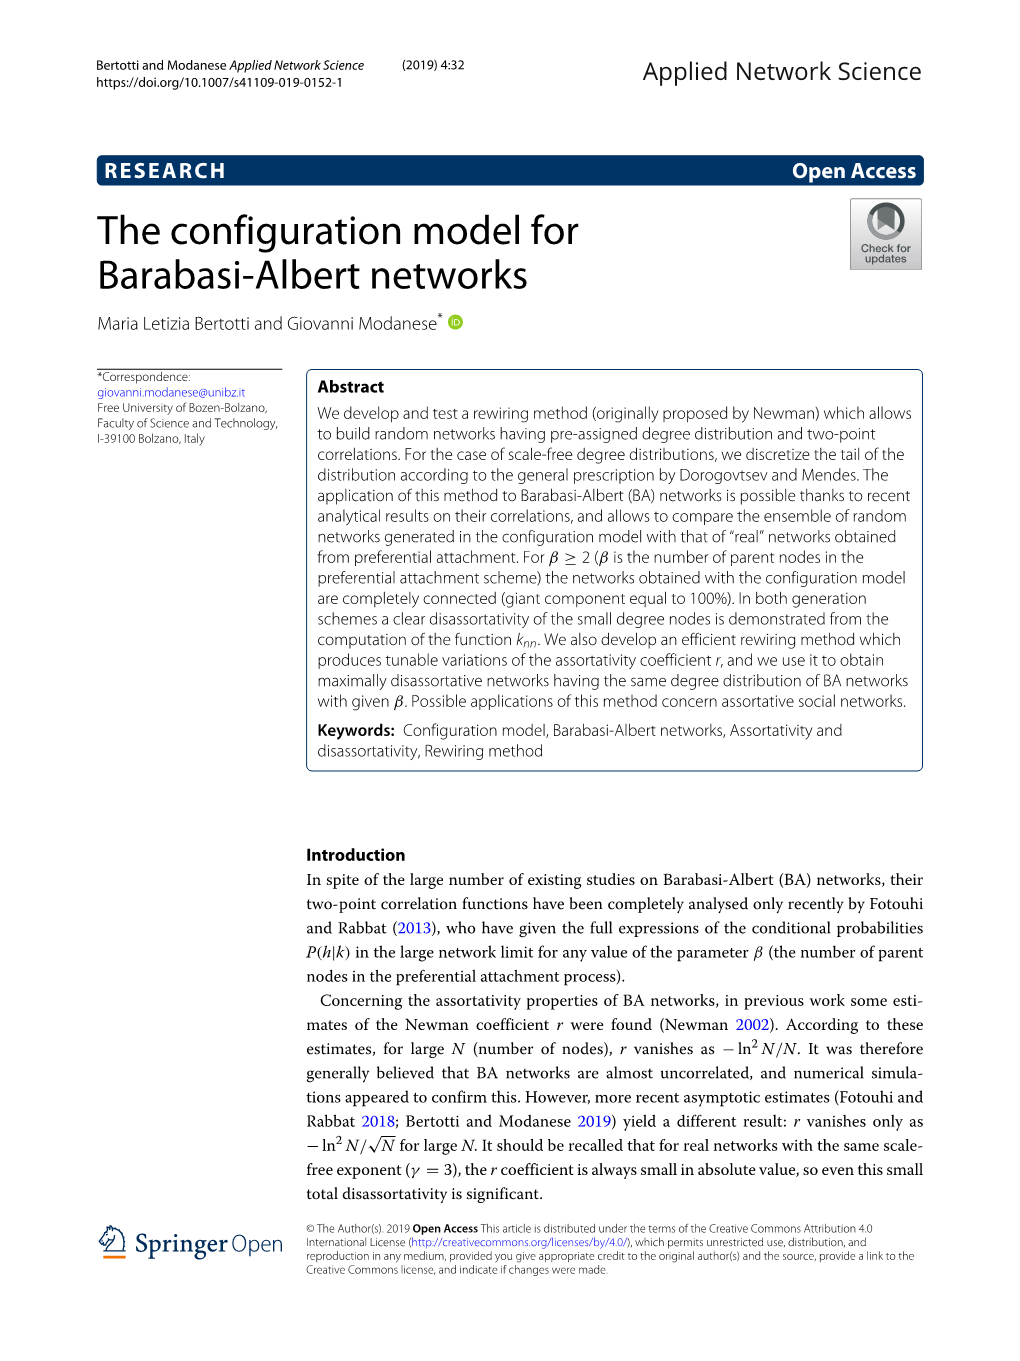 The Configuration Model for Barabasi-Albert Networks Maria Letizia Bertotti and Giovanni Modanese*